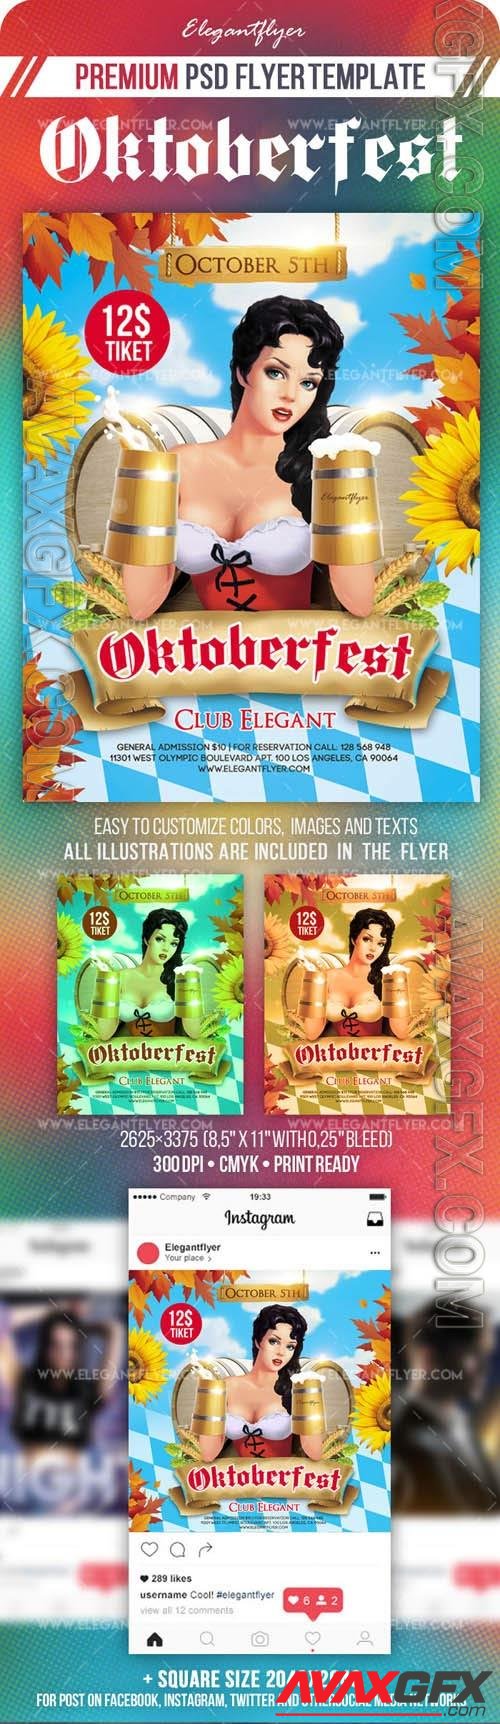 Oktoberfest Flyer PSD Template Instagram template